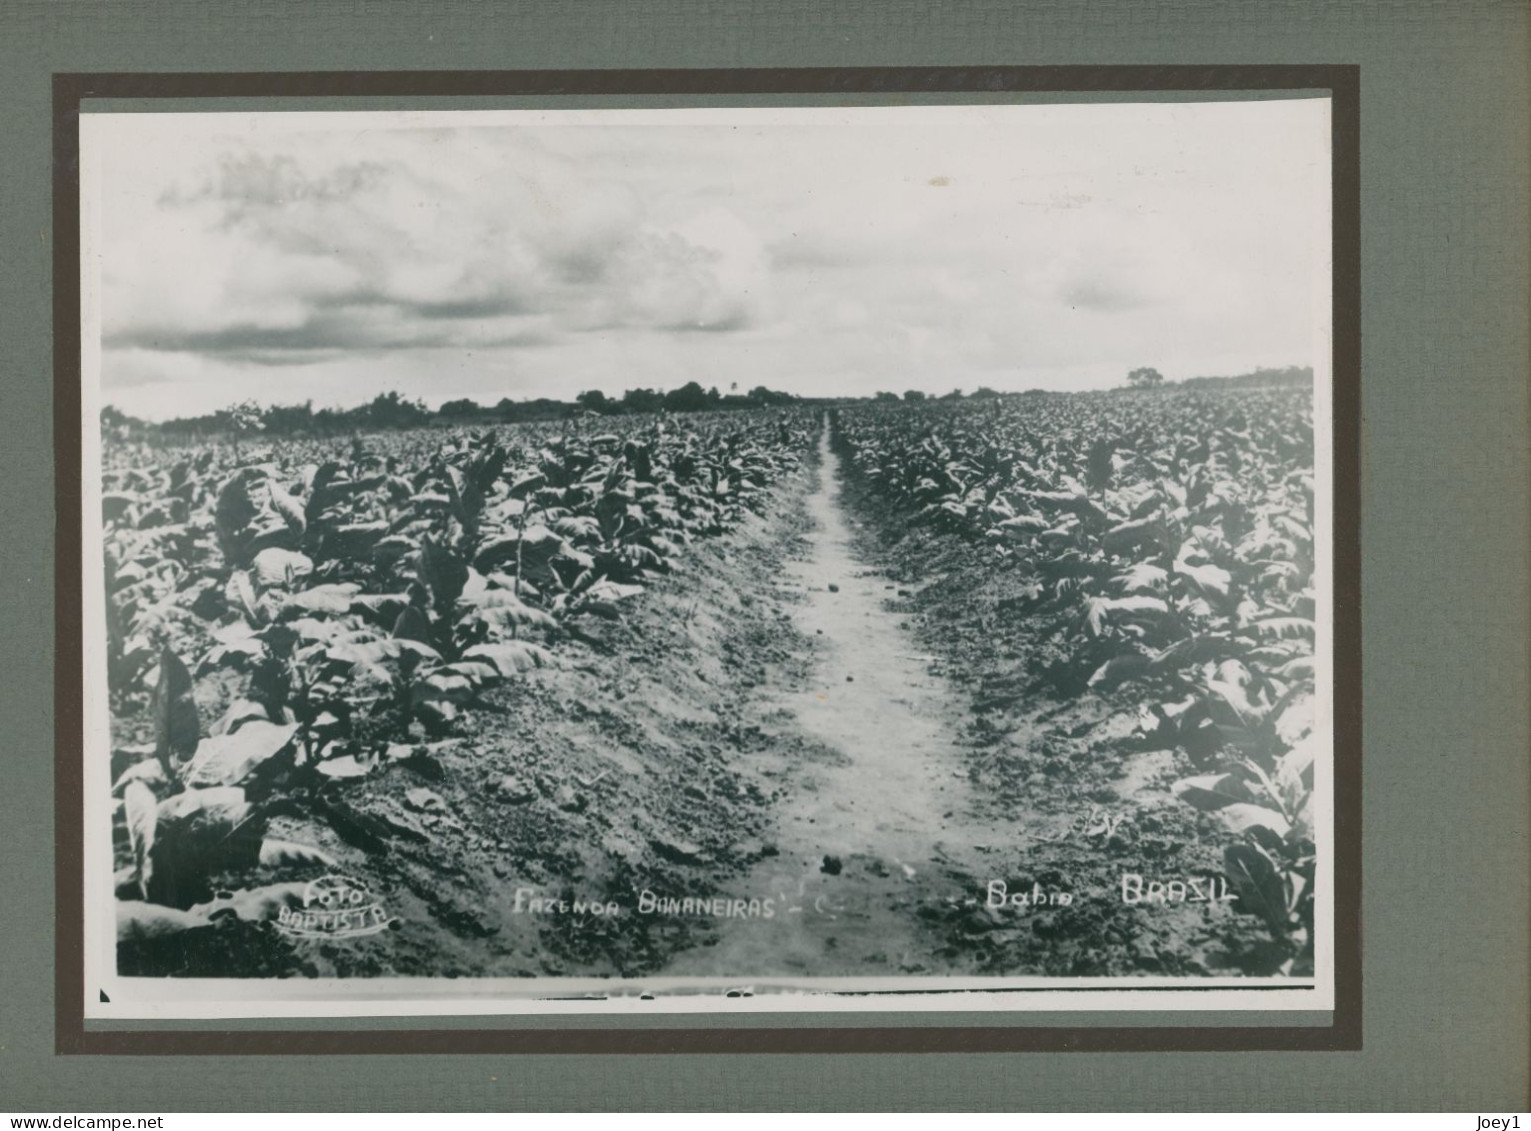 Photo De Plantations De Tabac Dans La Zone De Mata, Bahia Au Brésil En 1938 - Métiers